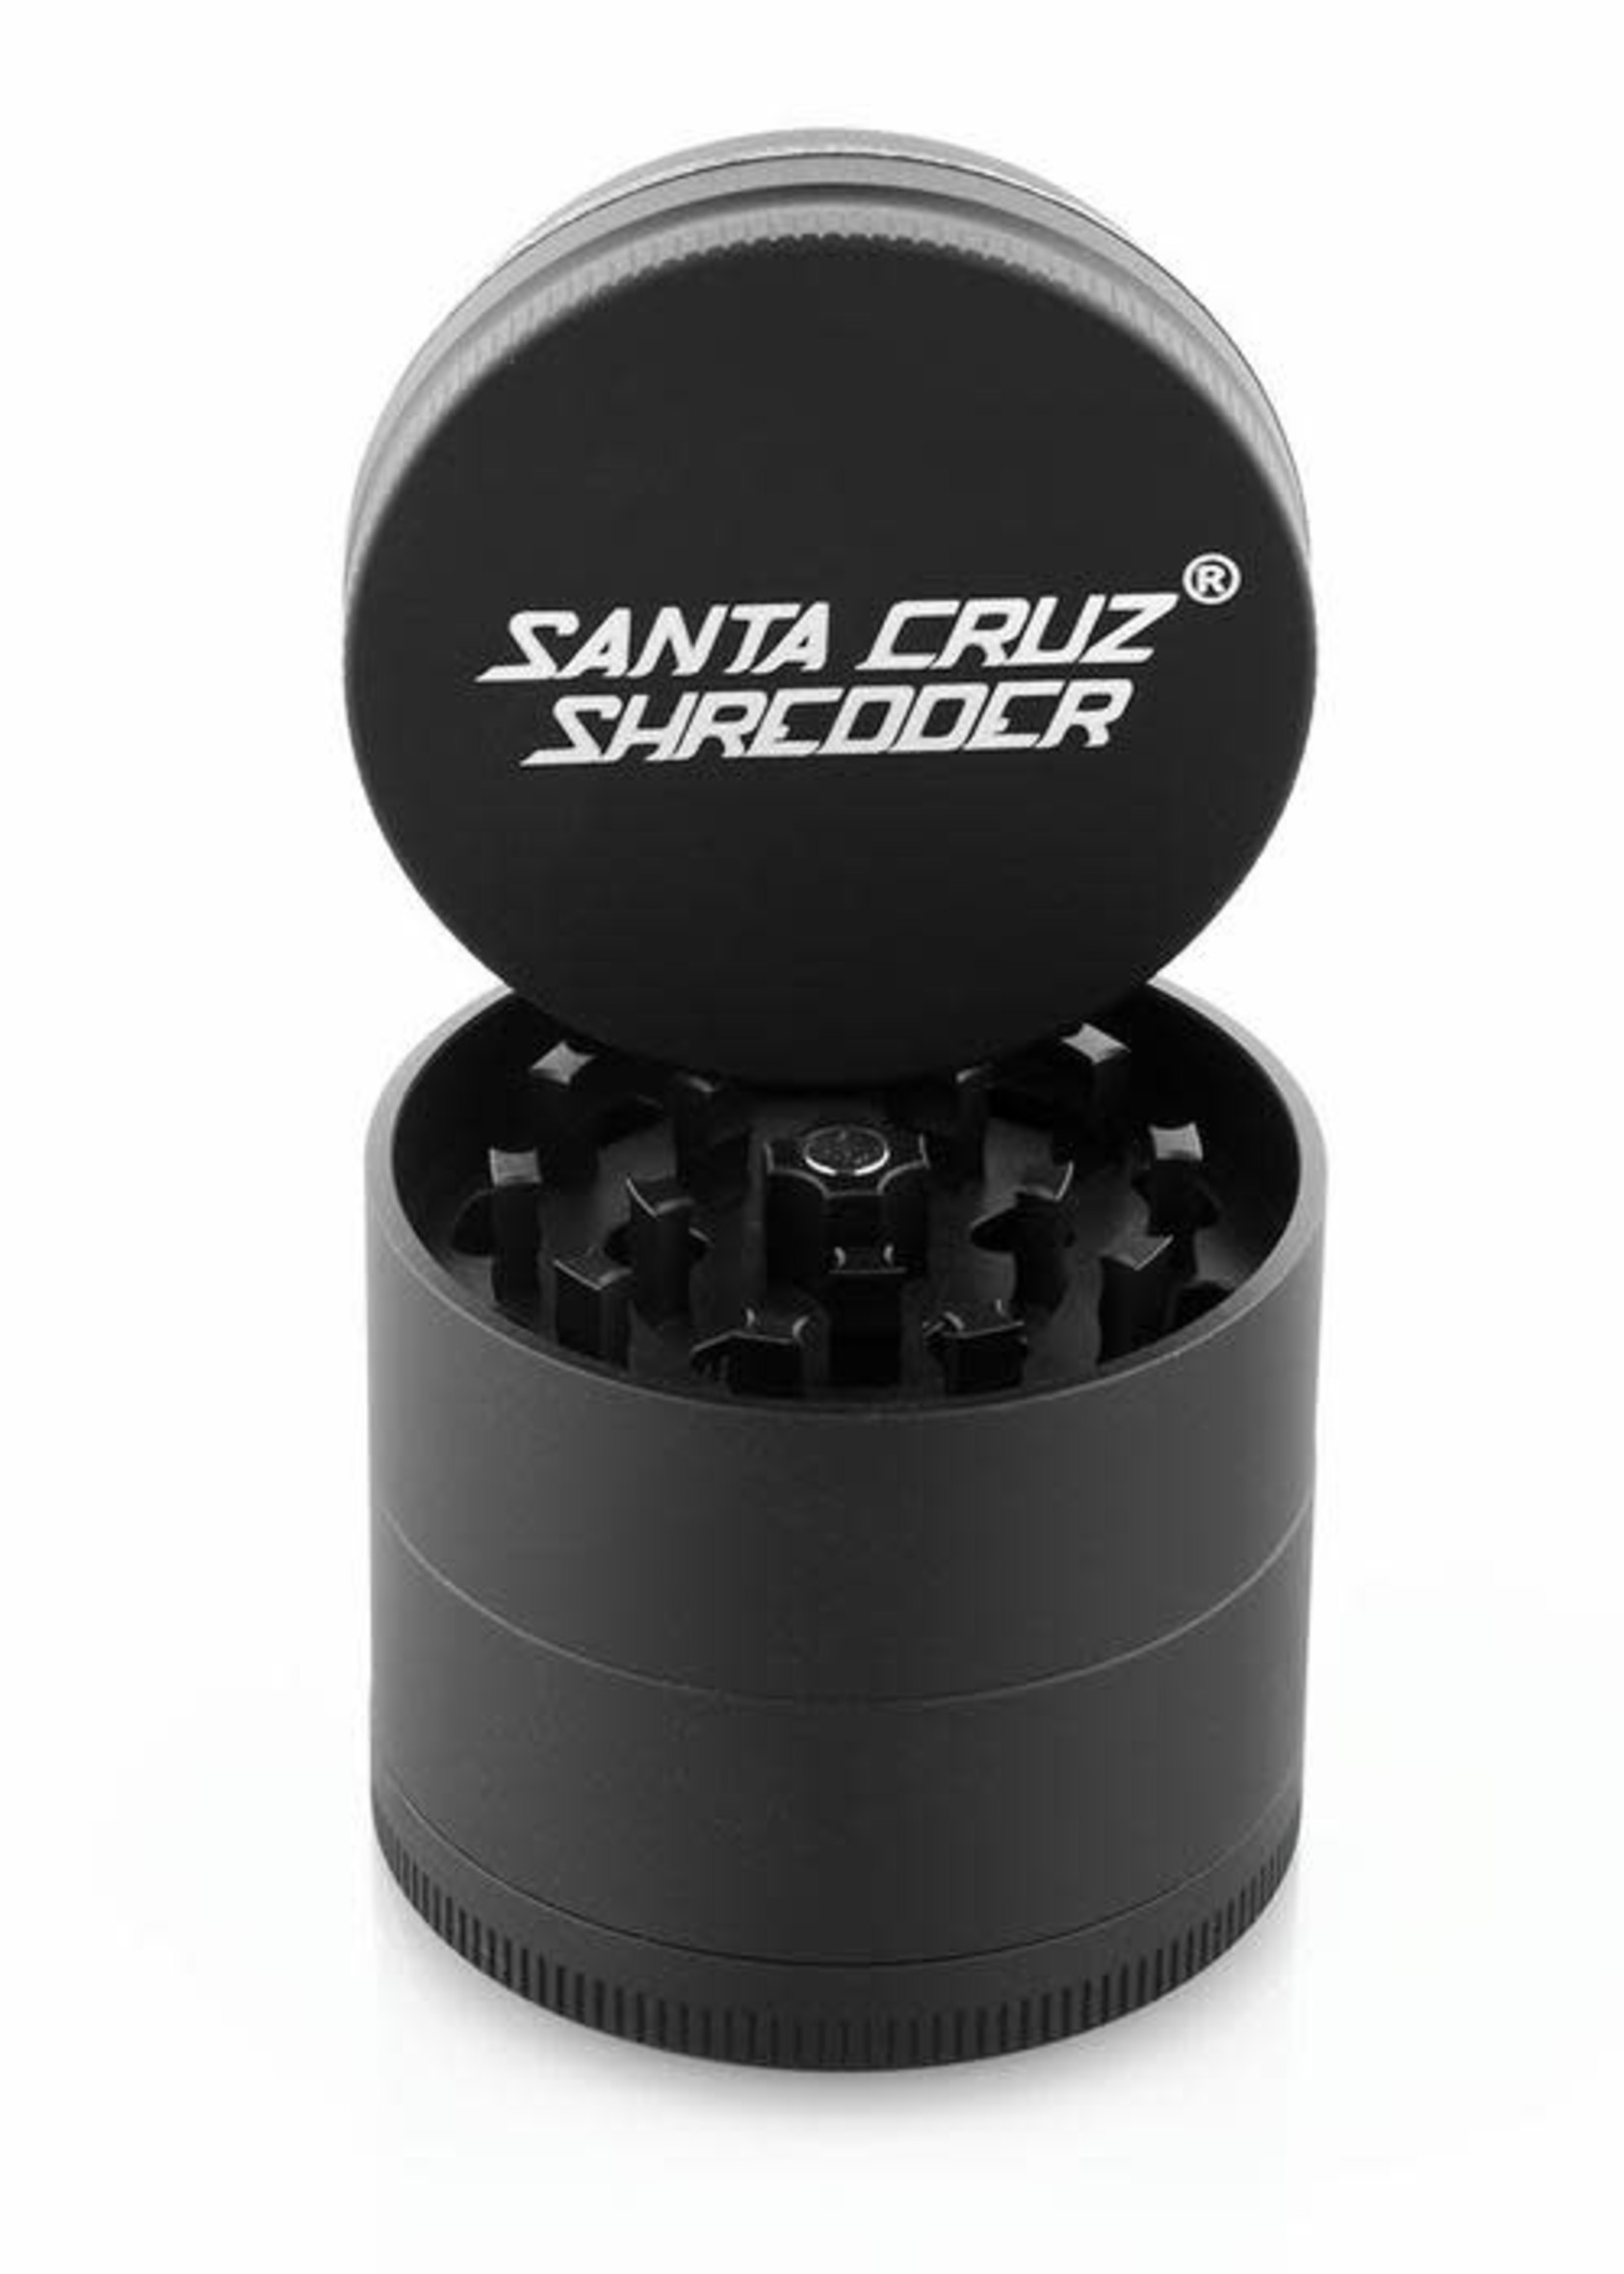 Santa Cruz Shredder Santa Cruz Shredder (Grinder)